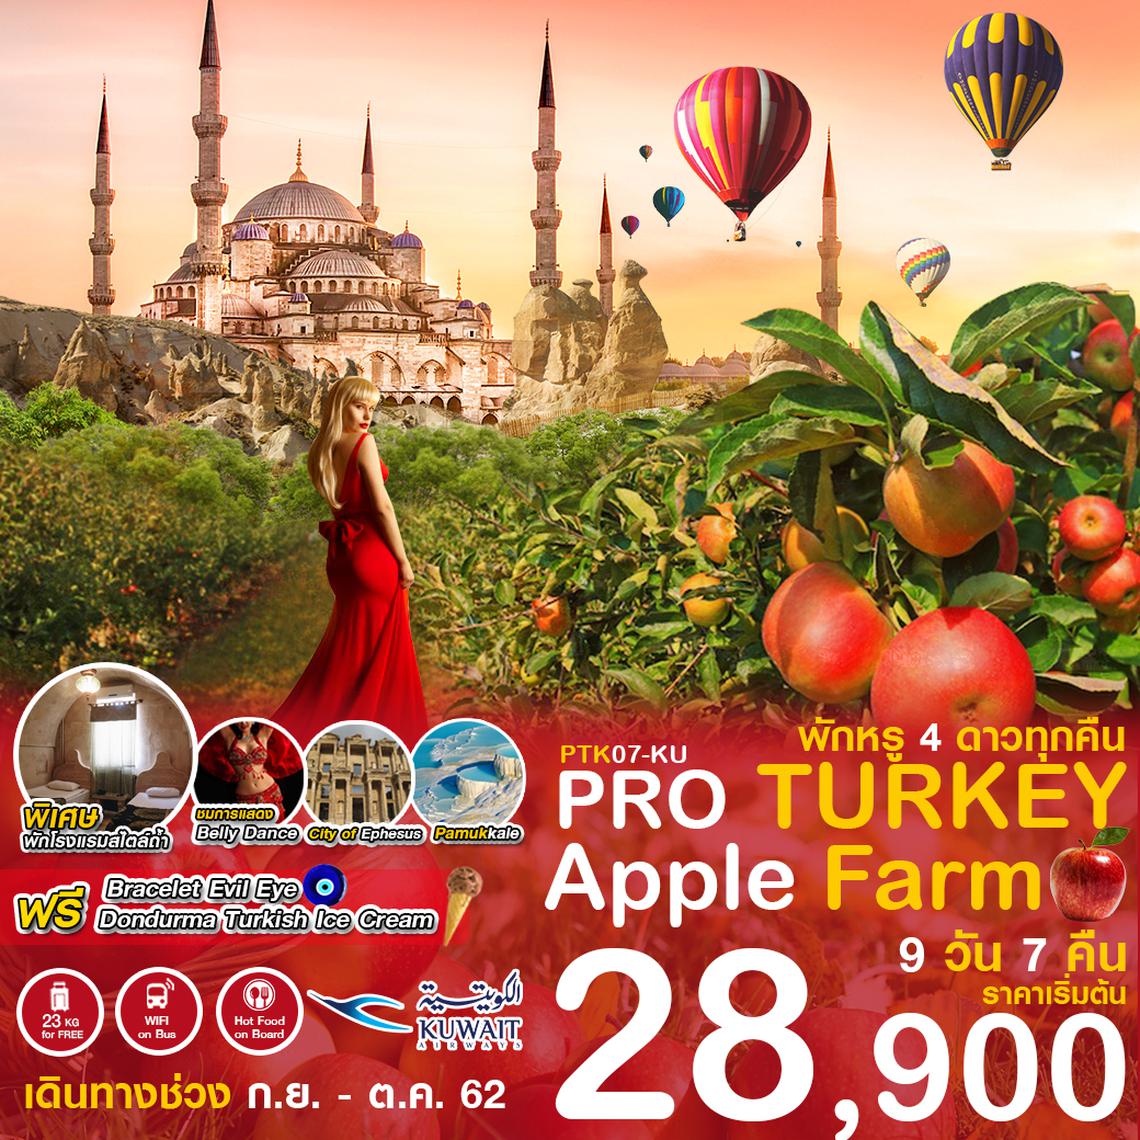 PTK07-KU PRO TURKEY RED APPLE FARM 9D7N